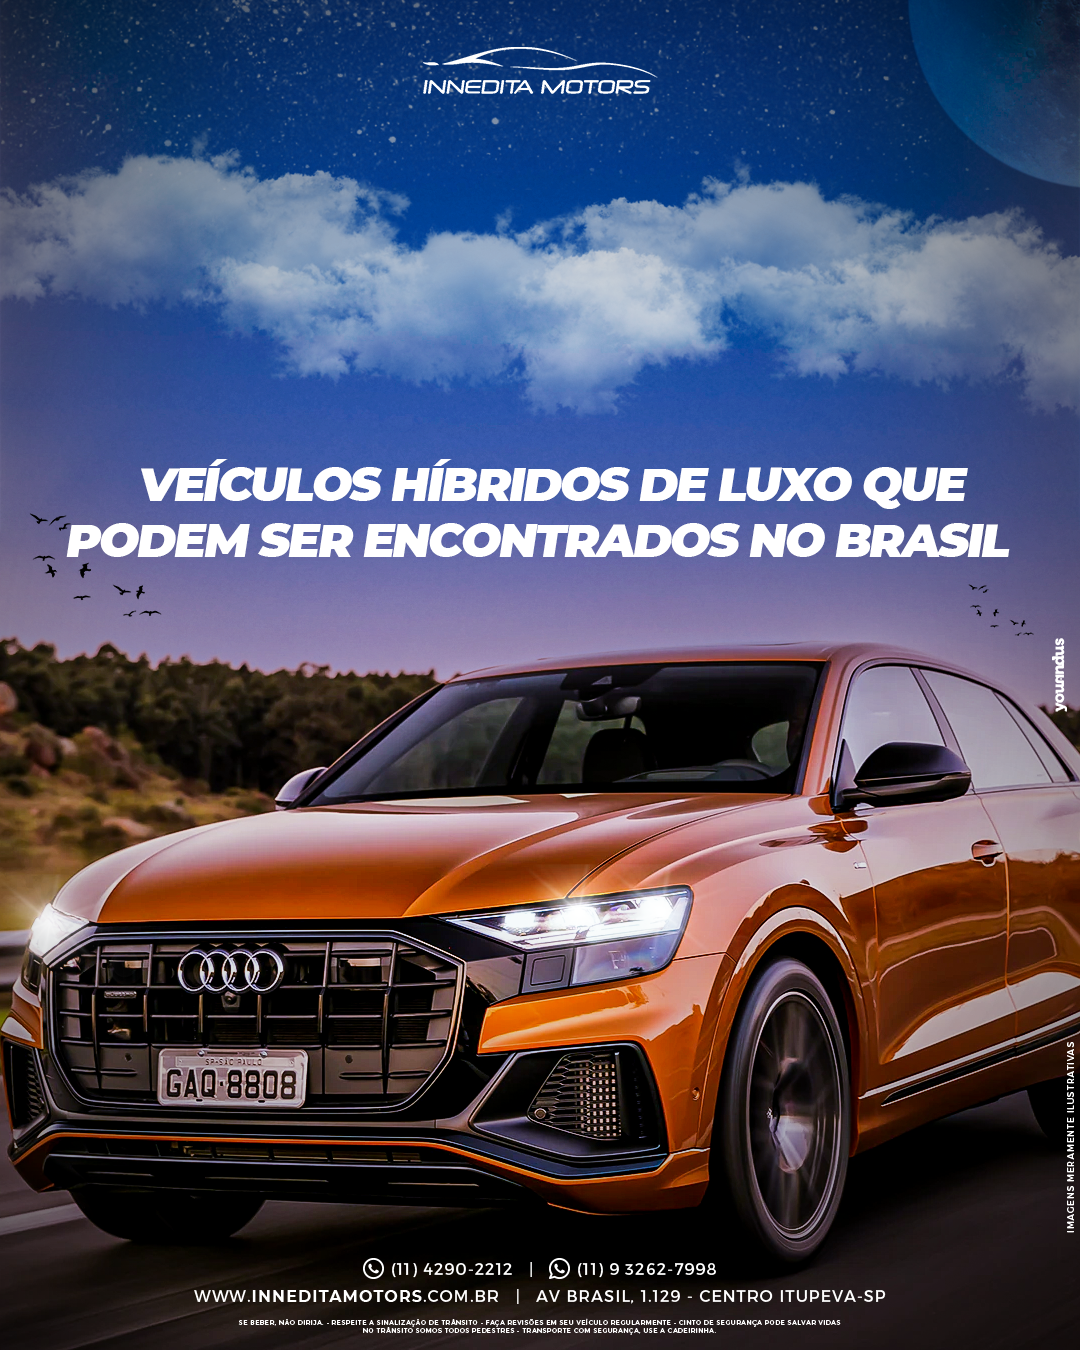 Veículos Híbridos de Luxo no Brasil: conheça os modelos encontrados por aqui!